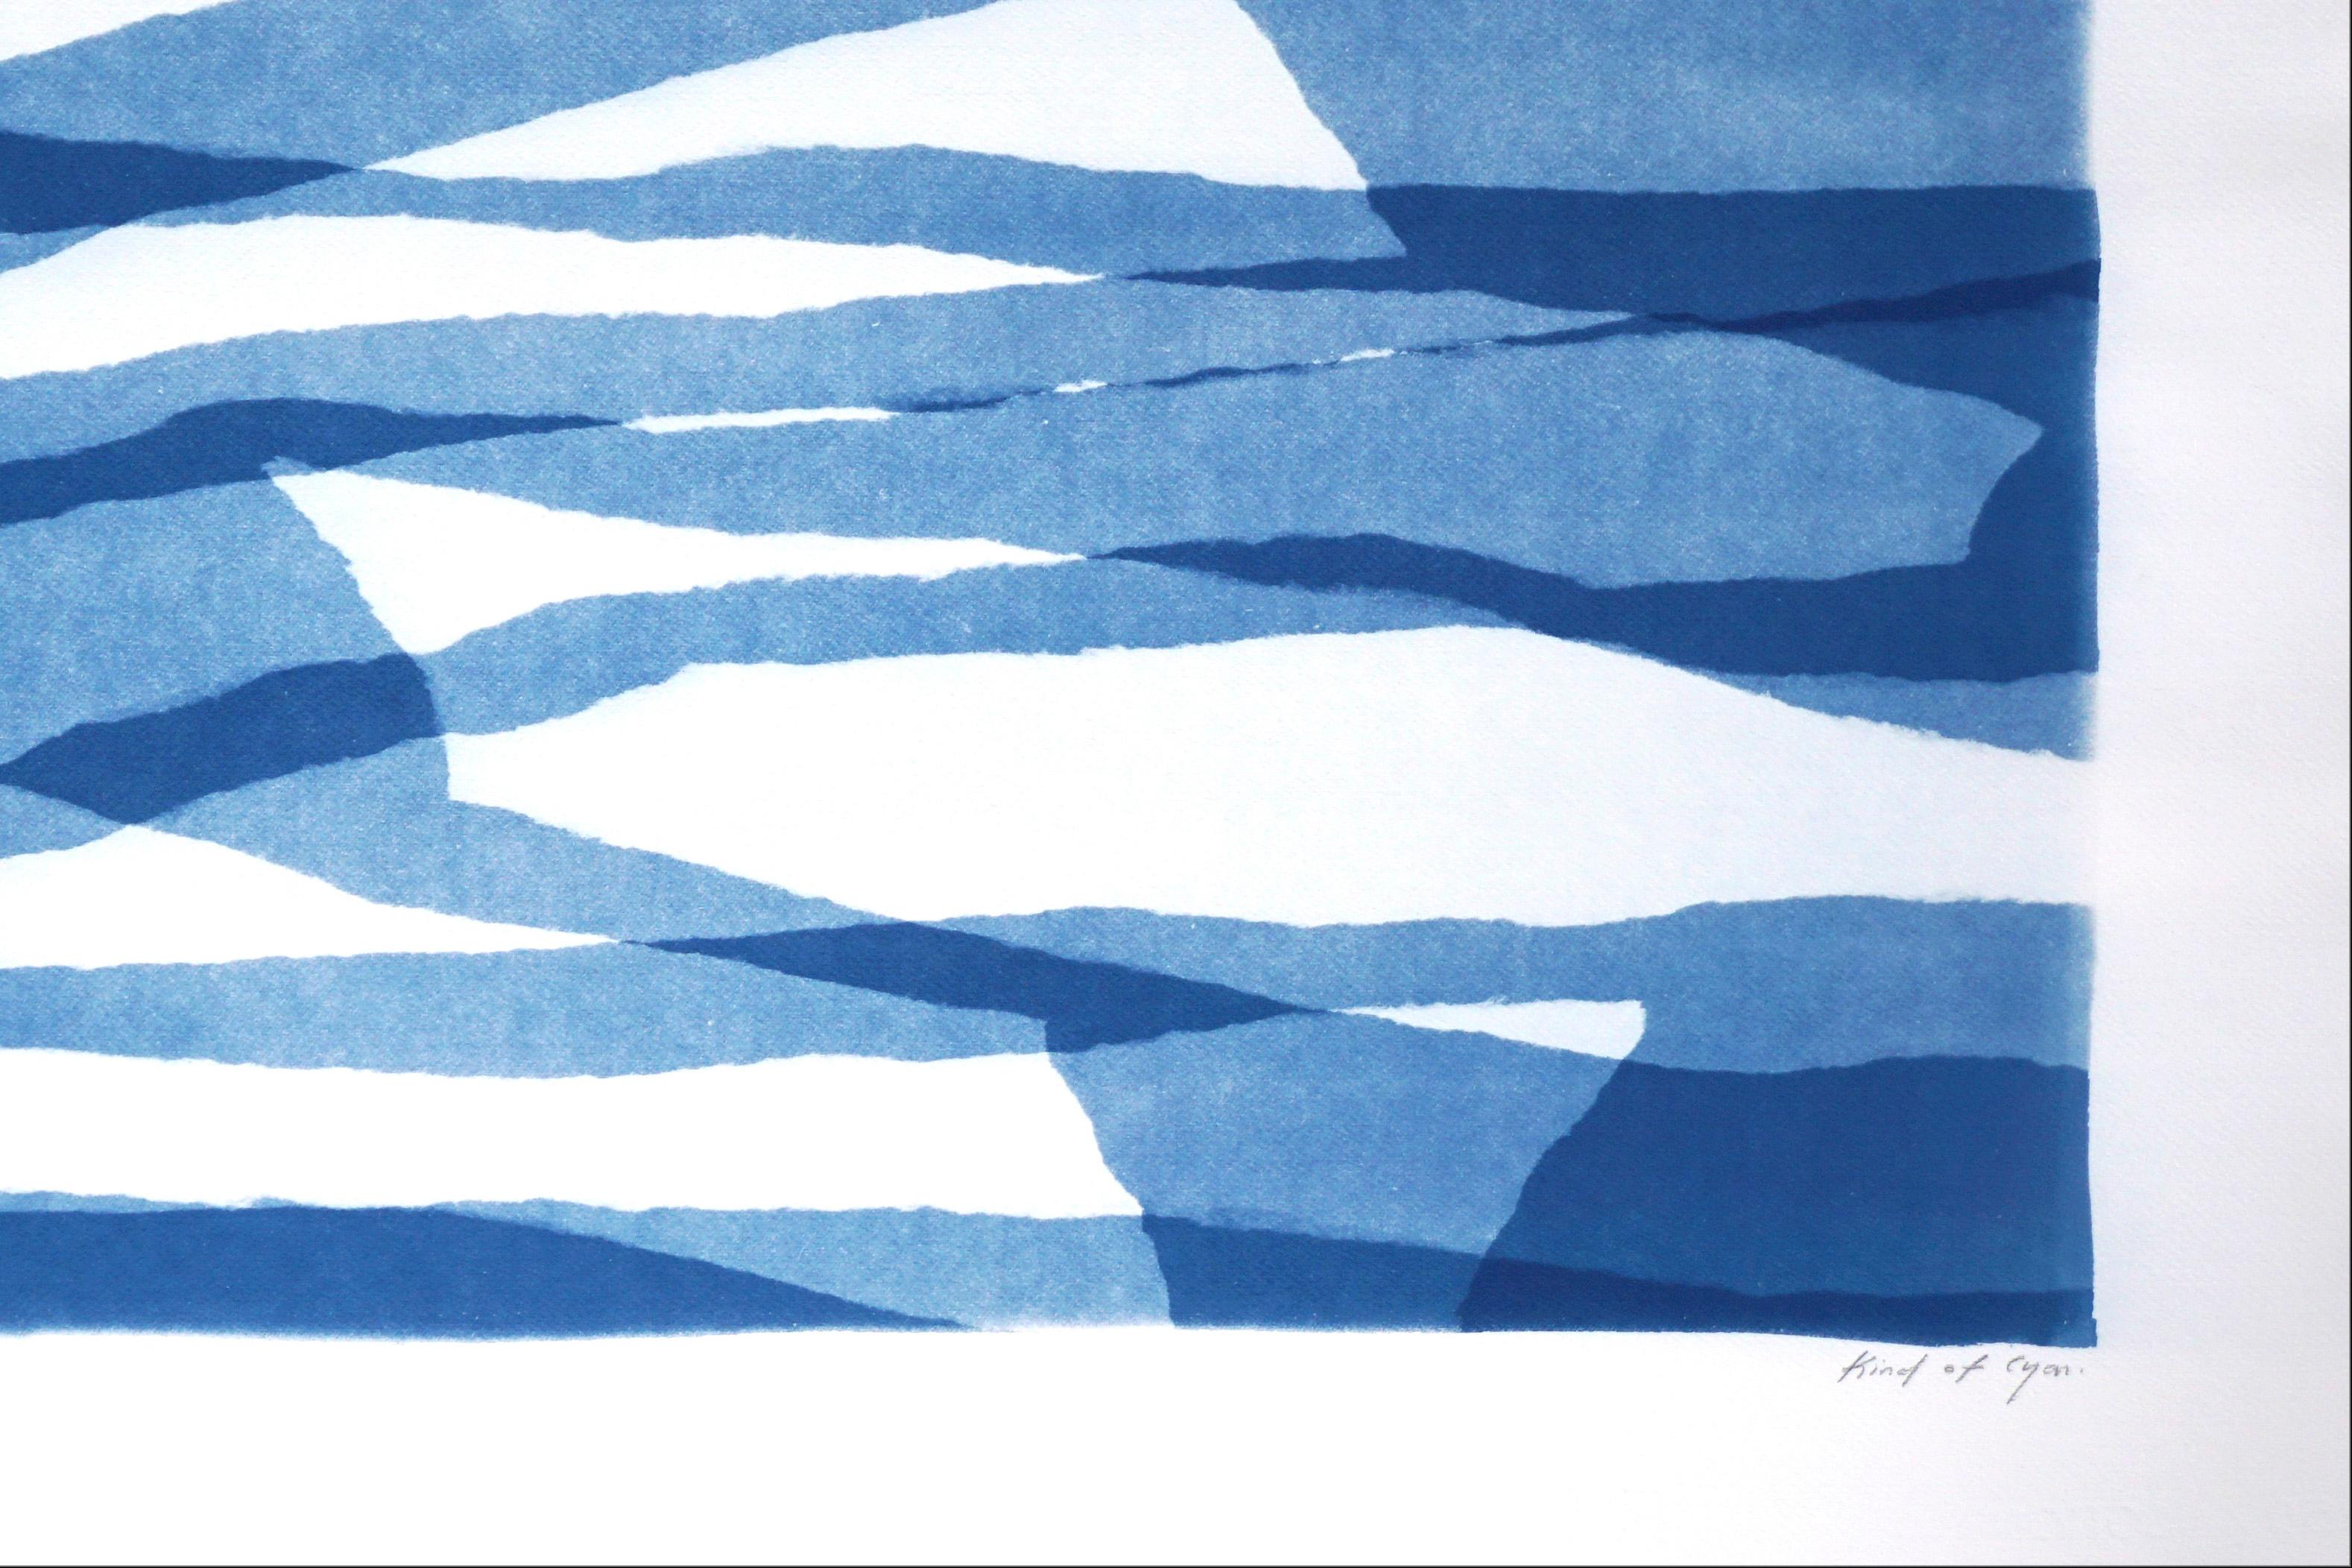 Monotype unique dans des tons bleus, couches de papier torsadé, formes abstraites horizontales - Bleu Abstract Print par Kind of Cyan